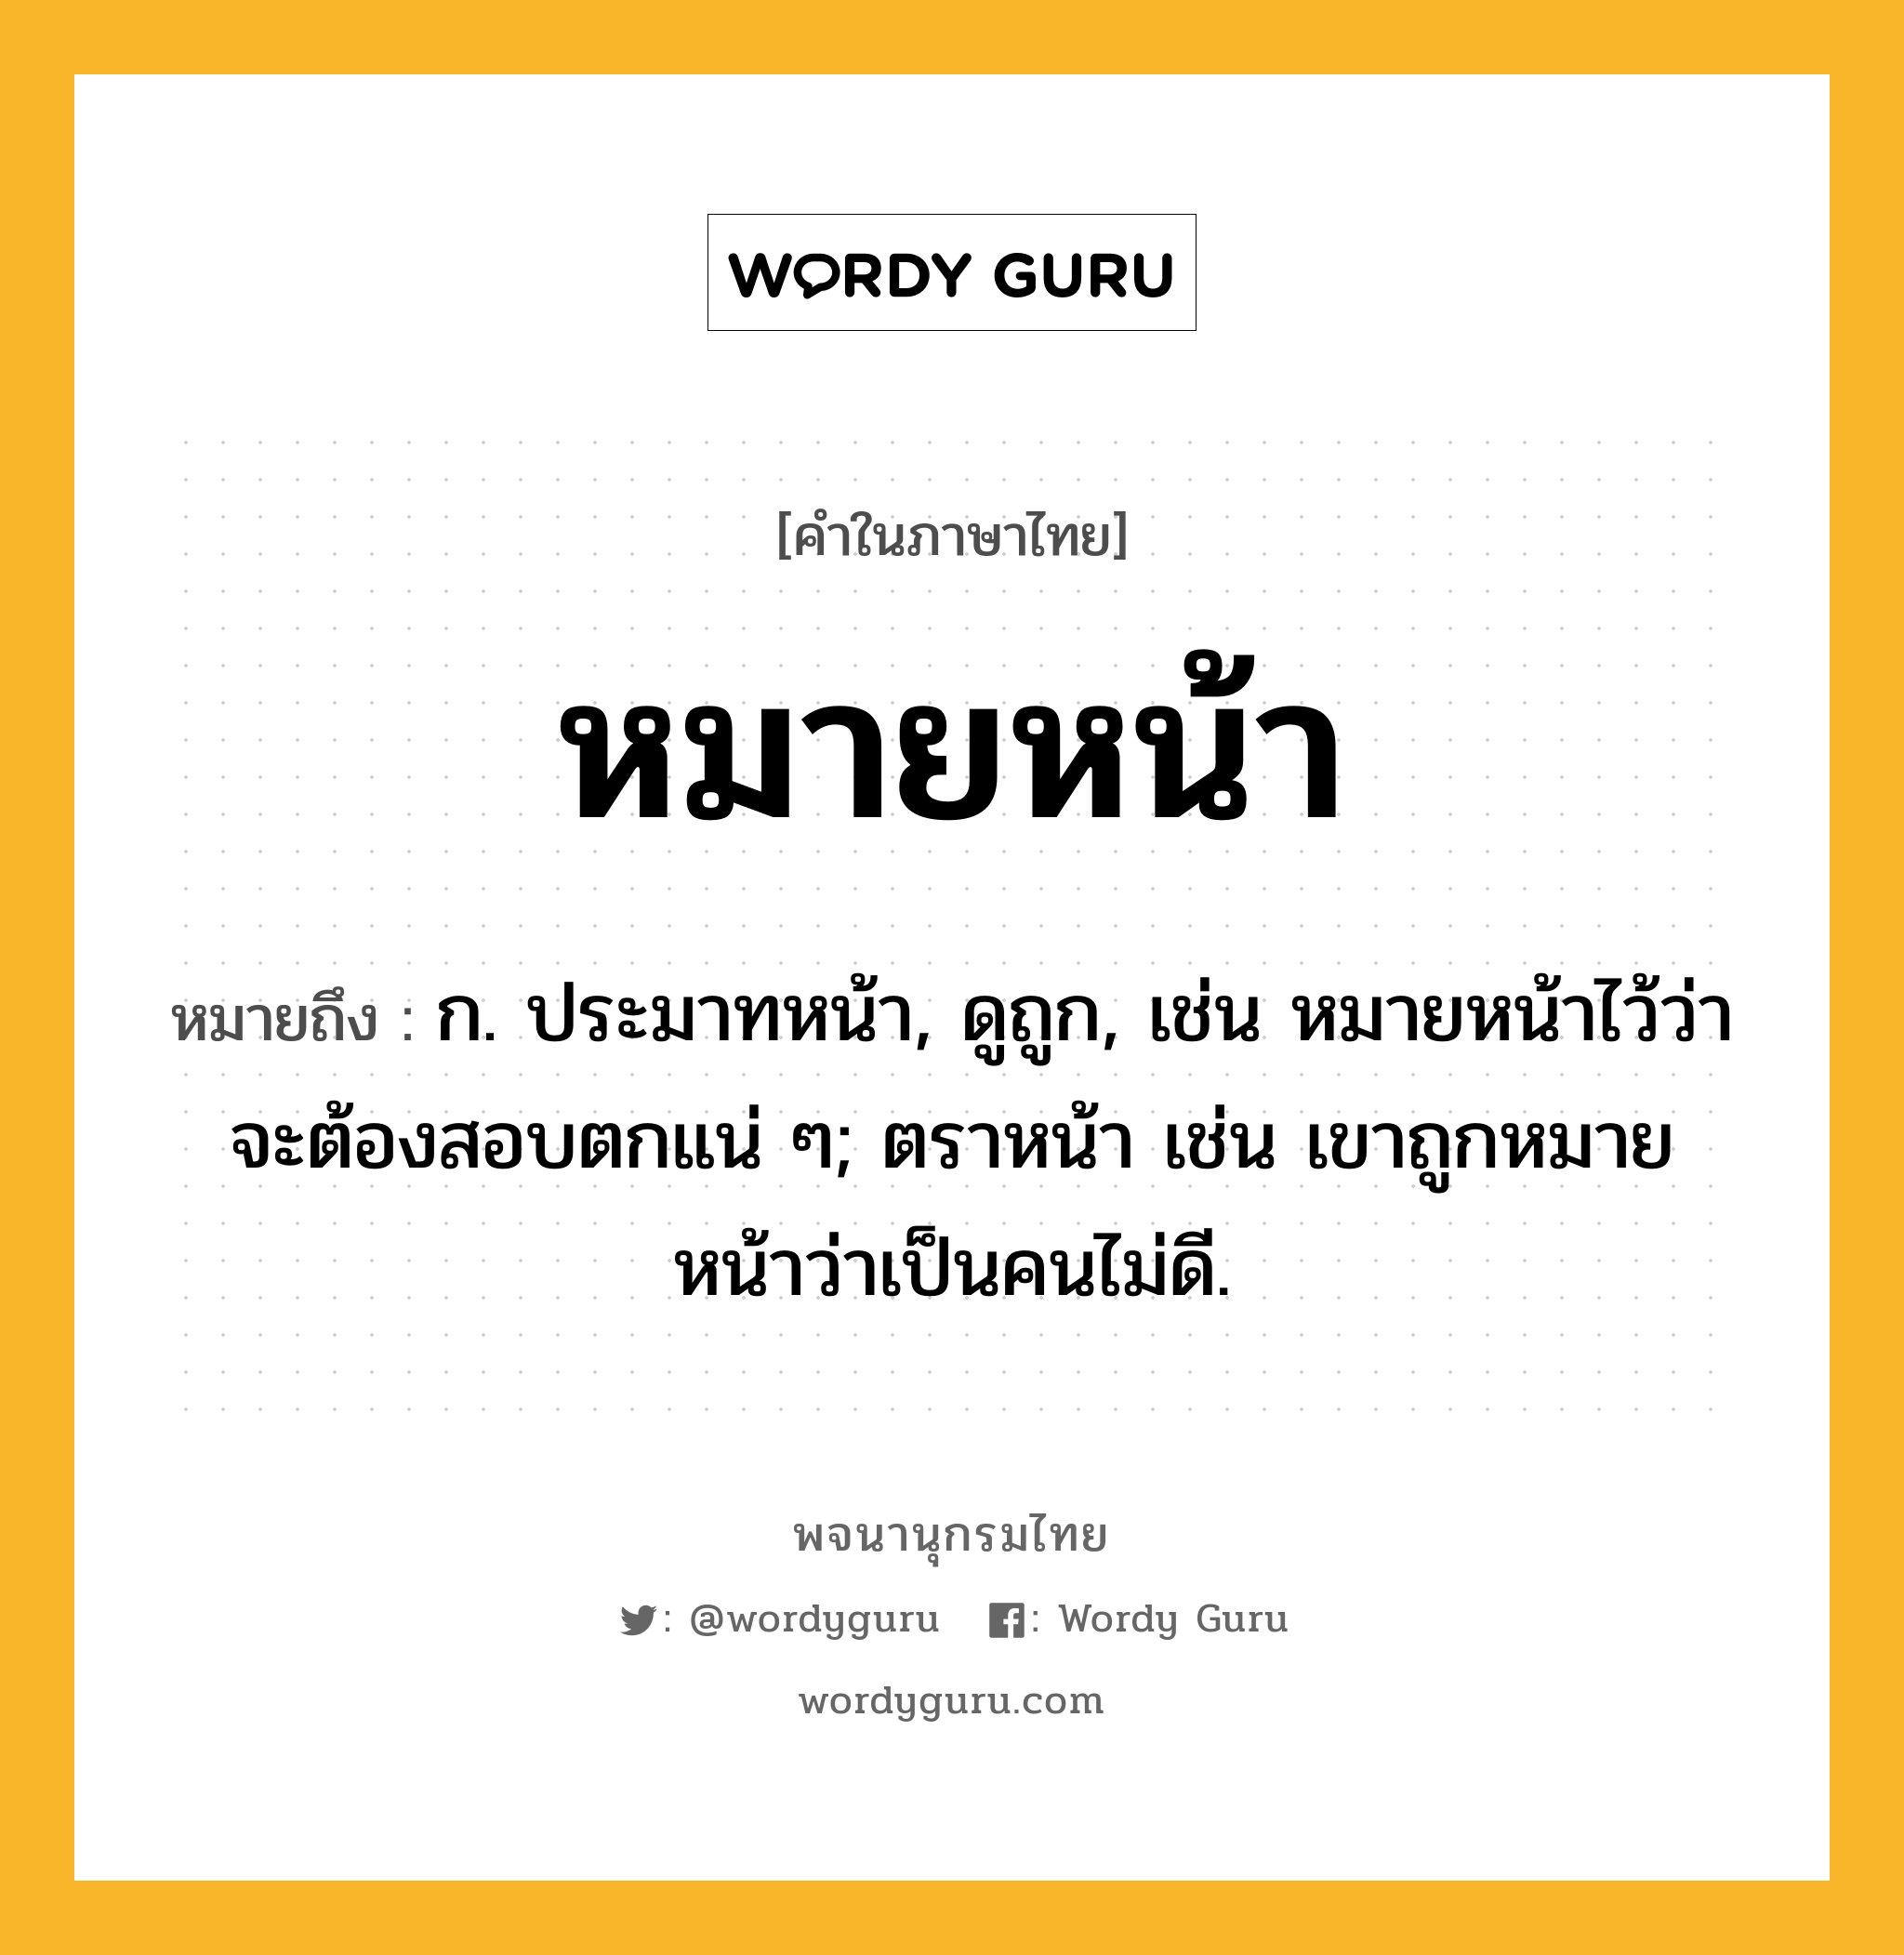 หมายหน้า หมายถึงอะไร?, คำในภาษาไทย หมายหน้า หมายถึง ก. ประมาทหน้า, ดูถูก, เช่น หมายหน้าไว้ว่าจะต้องสอบตกแน่ ๆ; ตราหน้า เช่น เขาถูกหมายหน้าว่าเป็นคนไม่ดี.